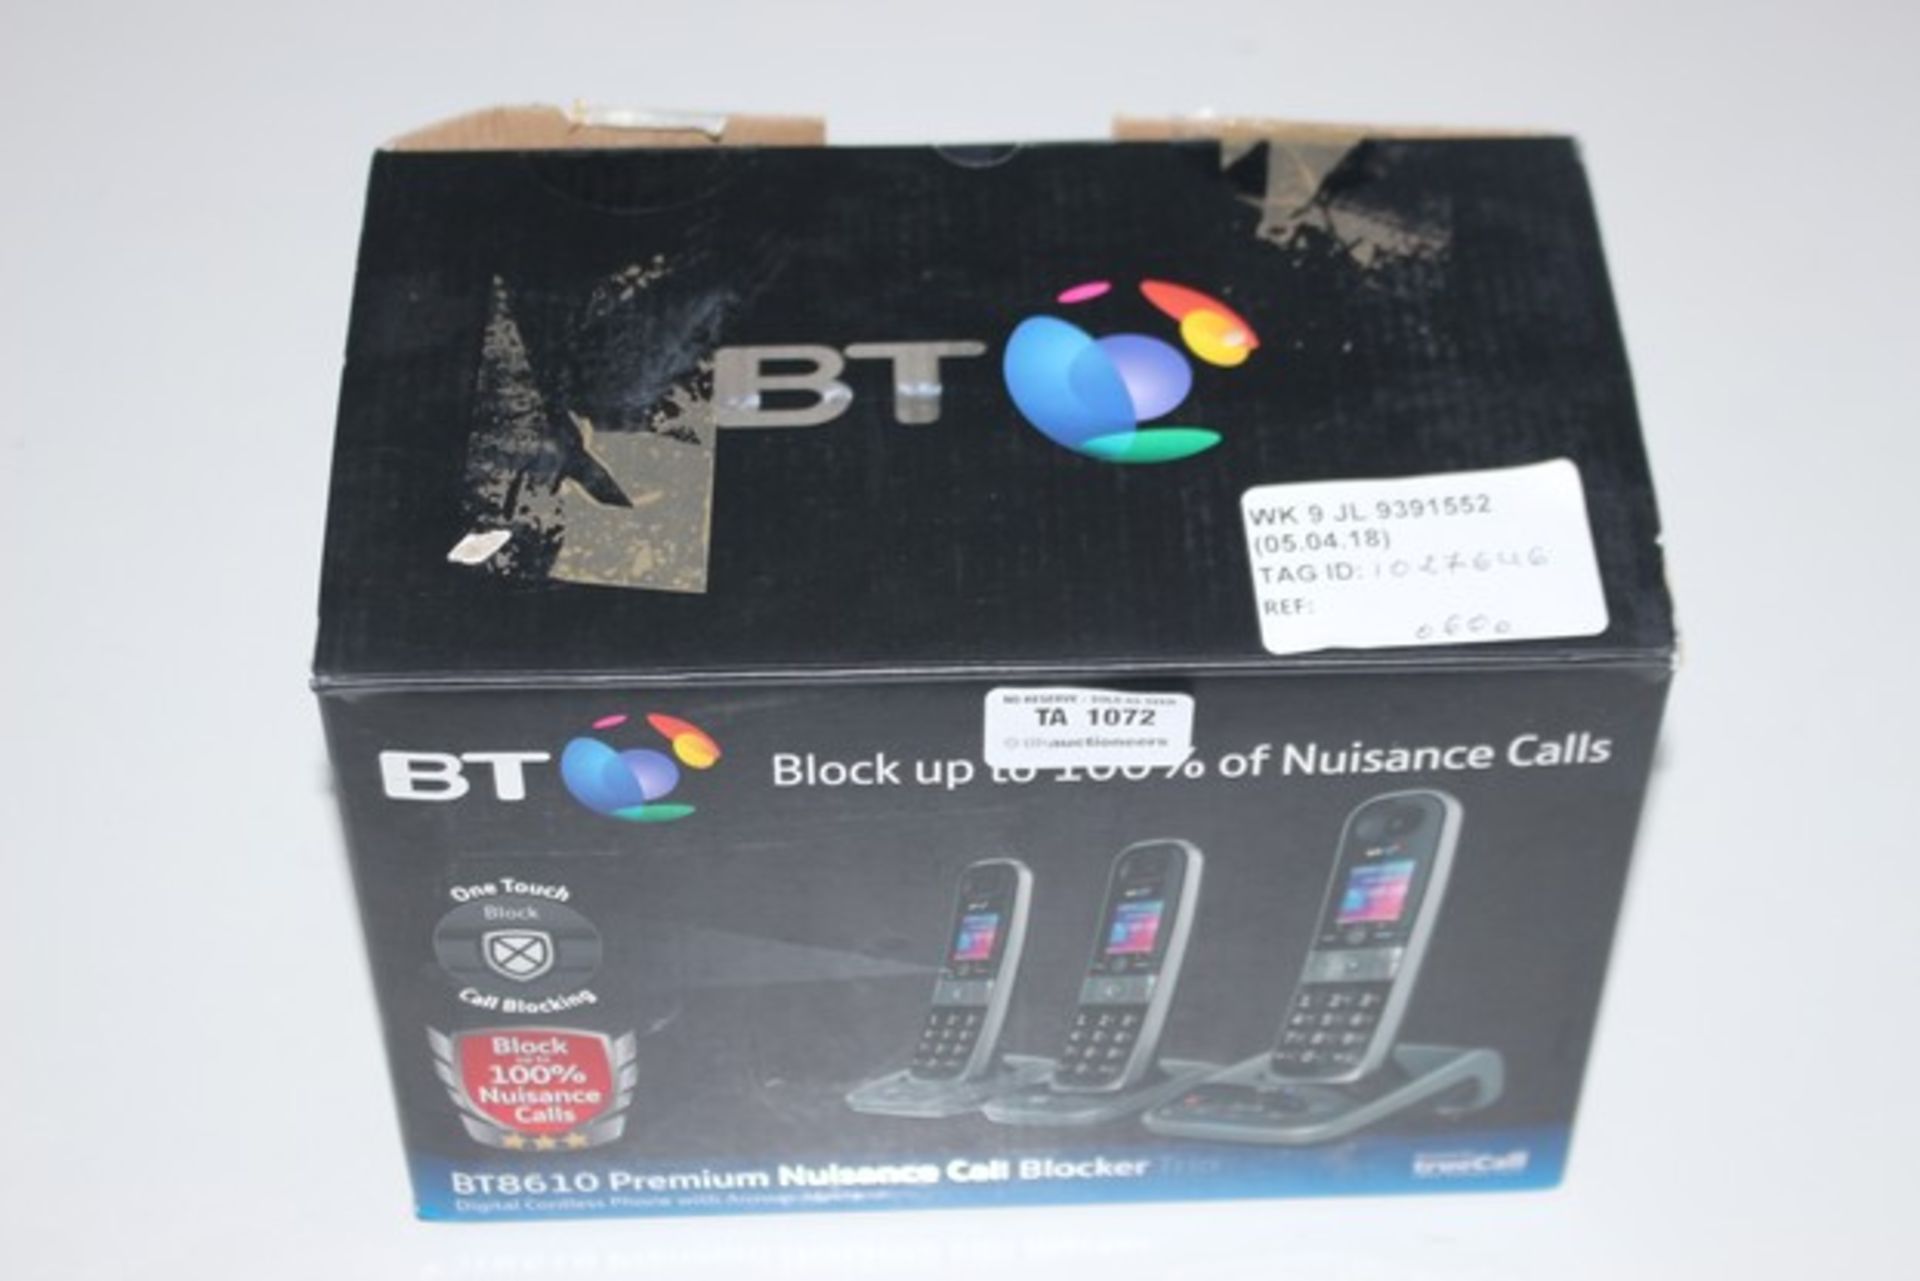 1 X BT 8610 PREMIUM NUISANCE CALL BLOCK TRIO RRP £60 (05.04.18) (1027646)